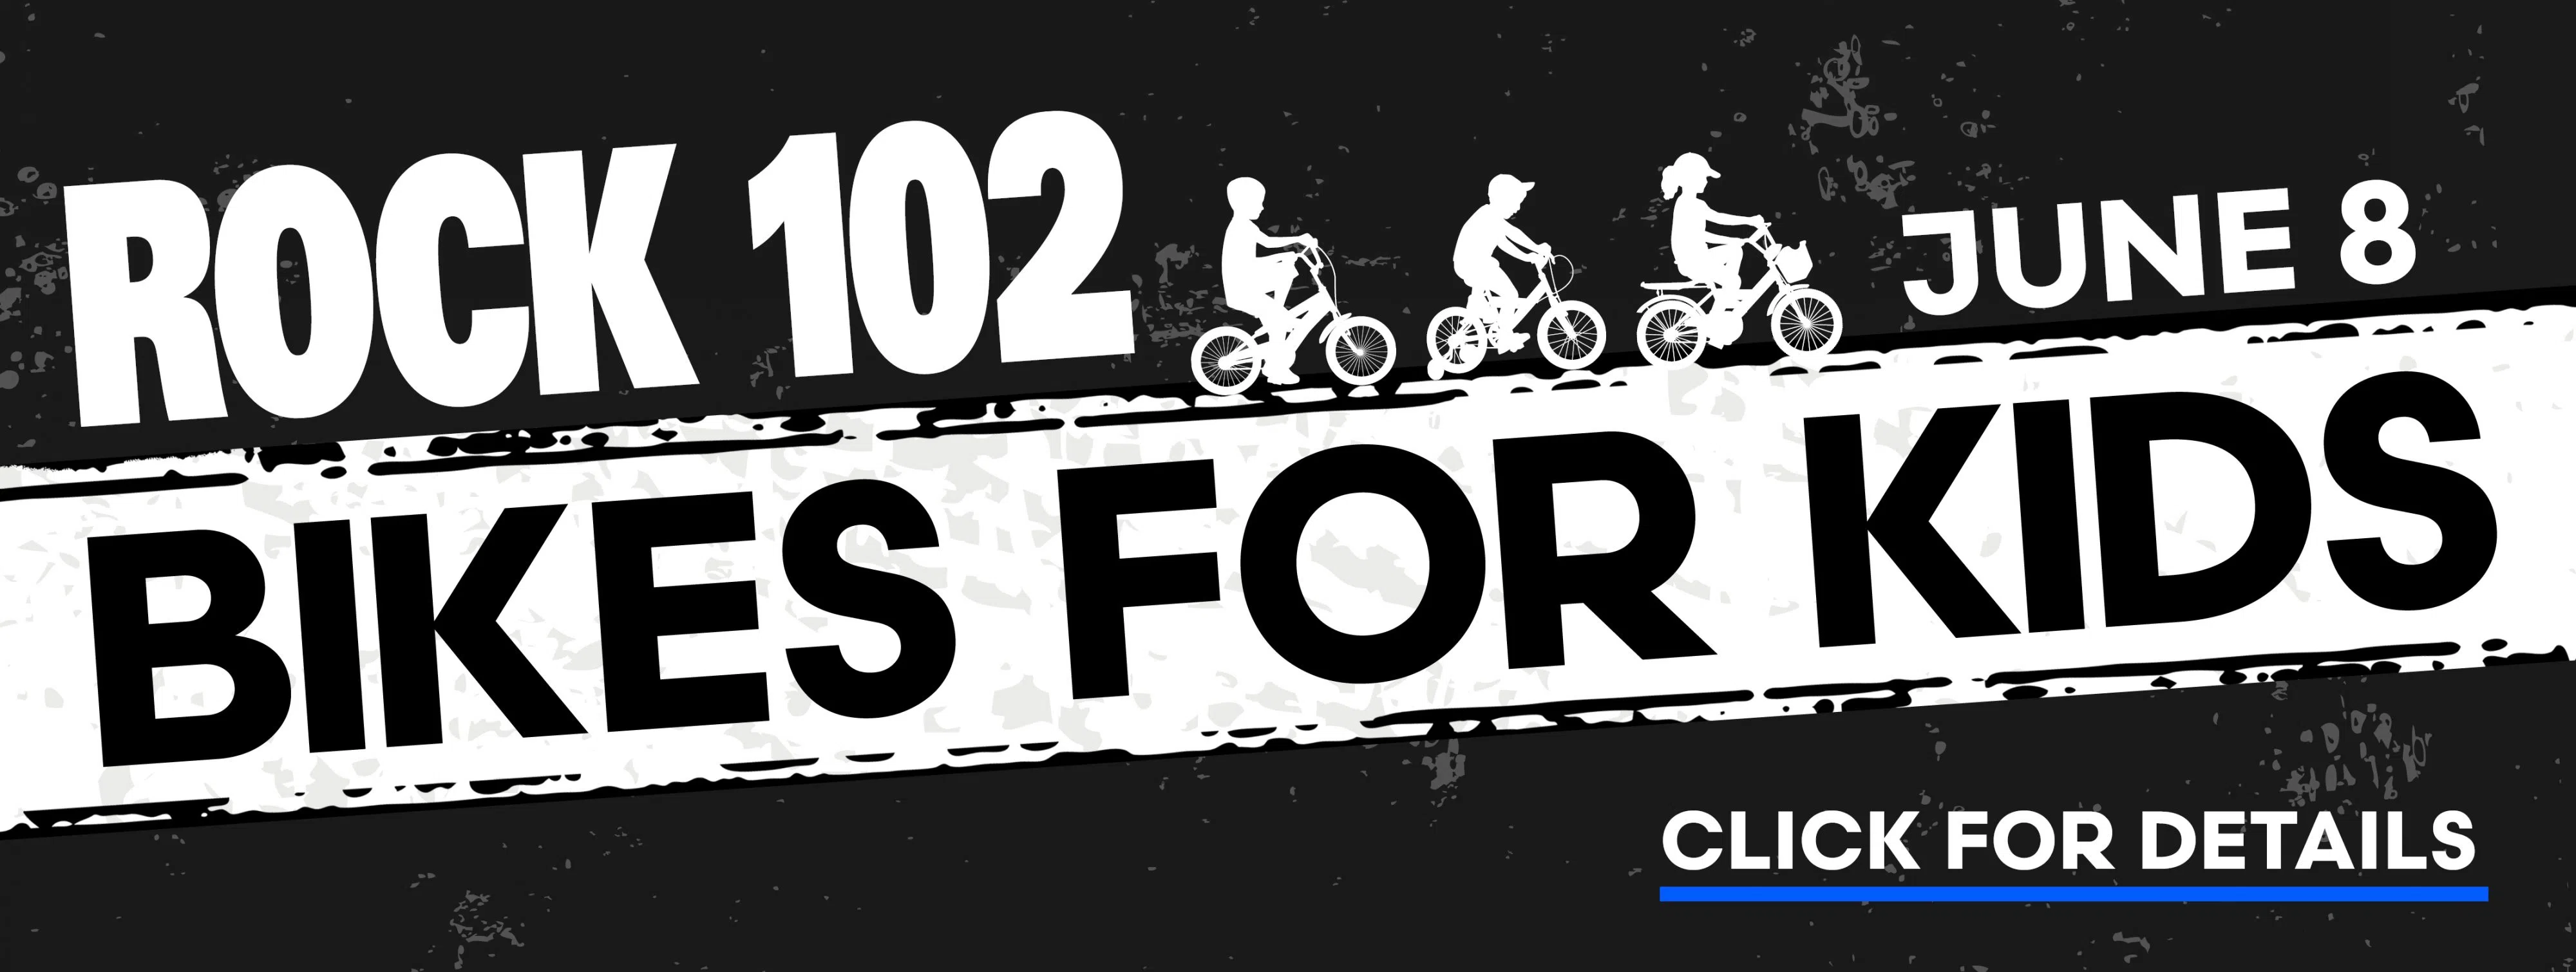 Feature: https://www.rock102rocks.com/rock-102-bikes-for-kids